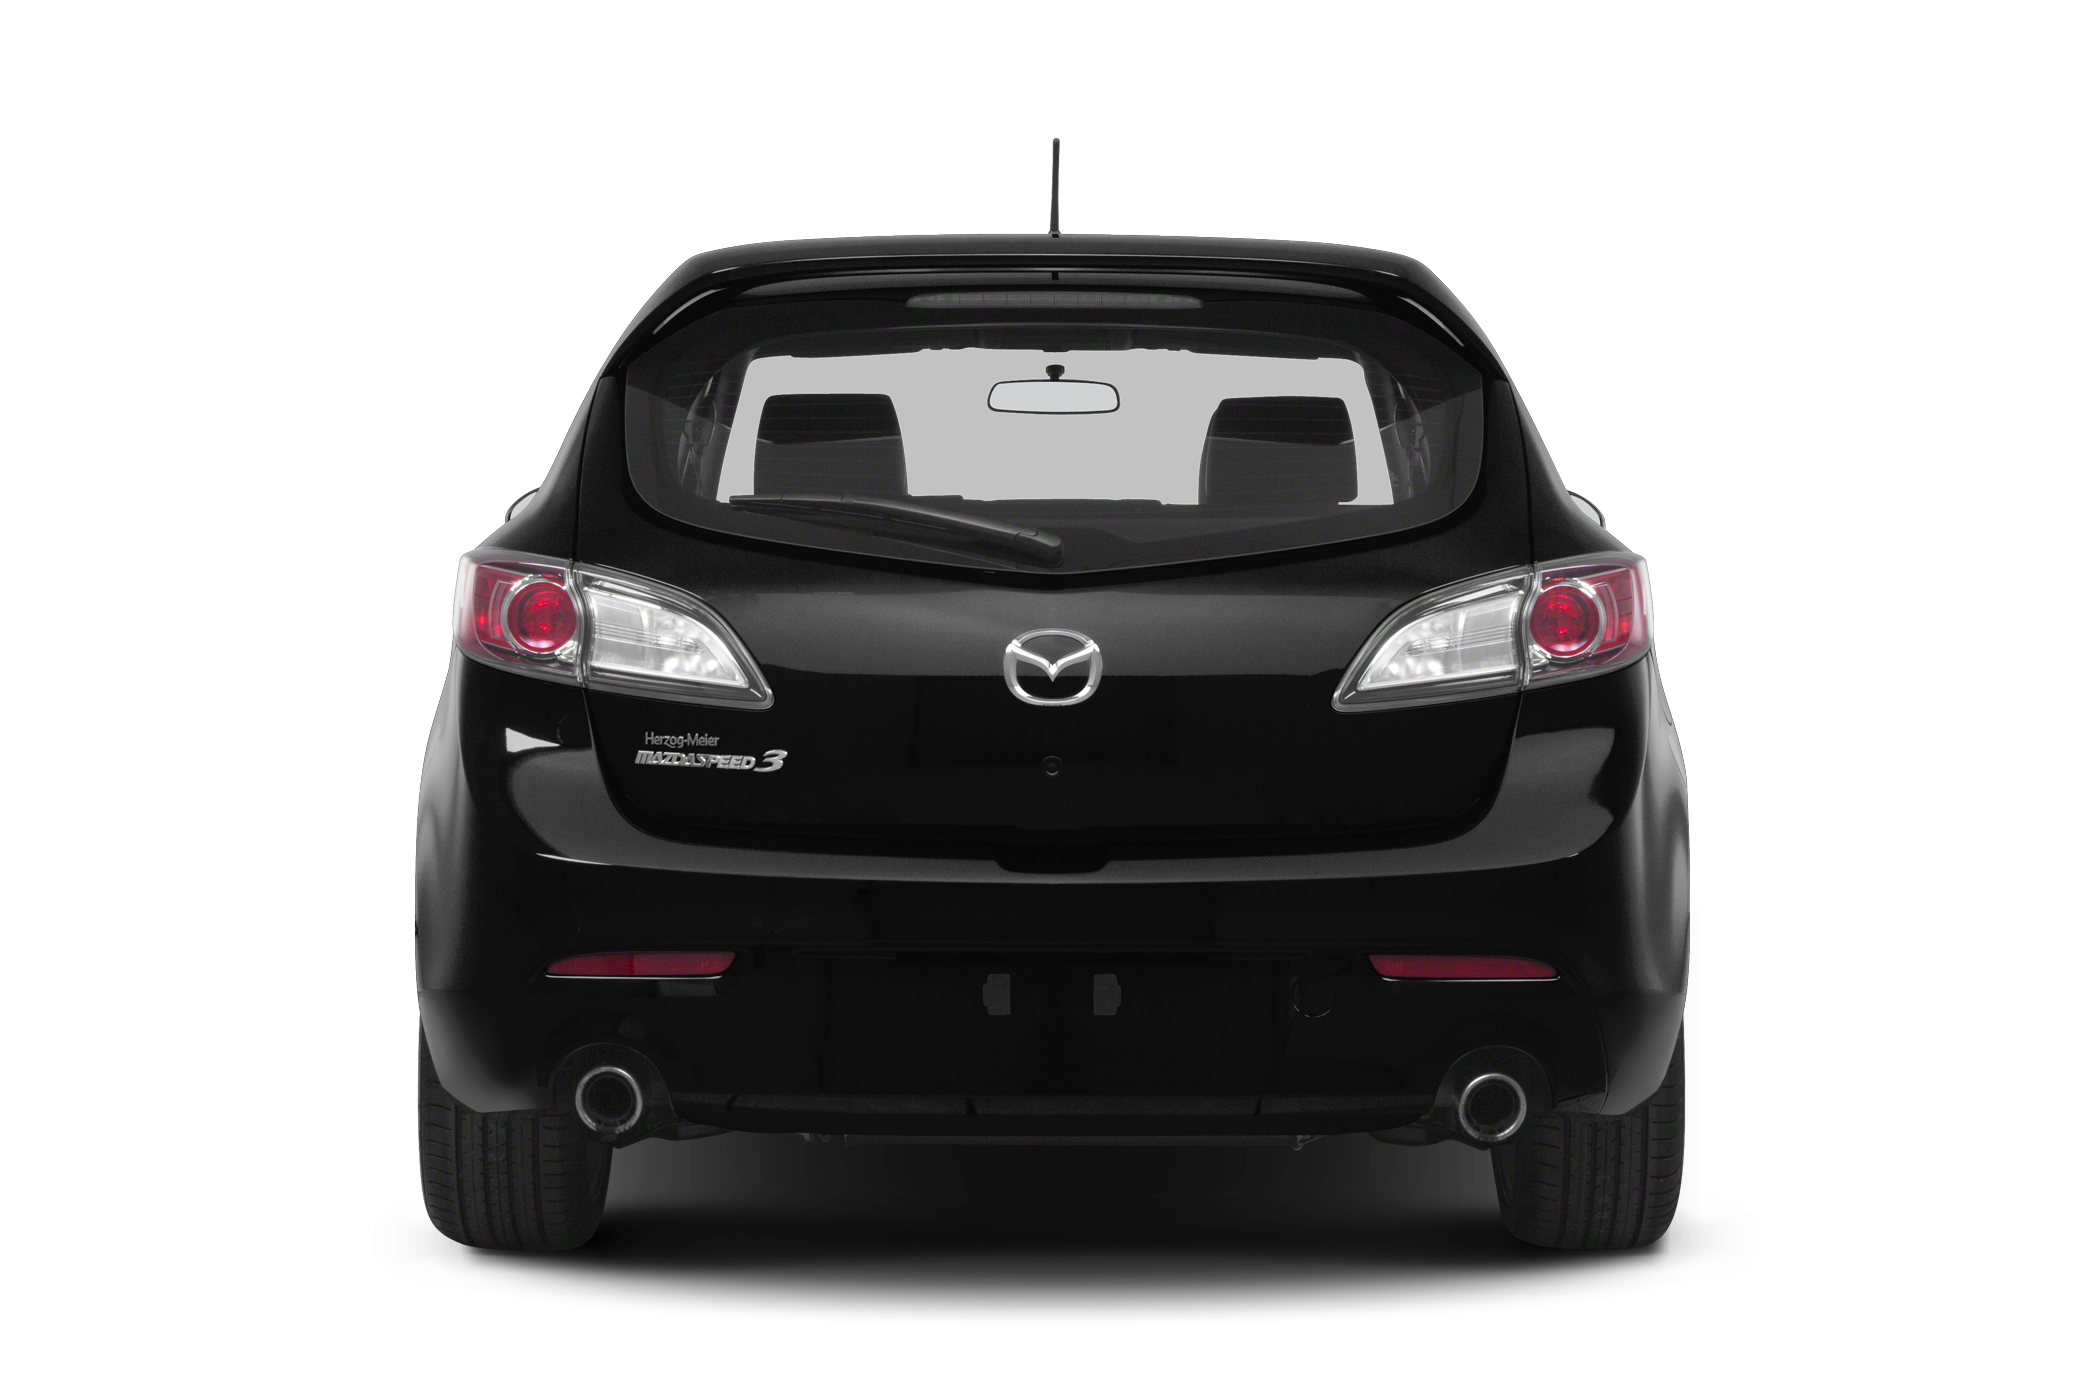 2013 Mazda MazdaSpeed3